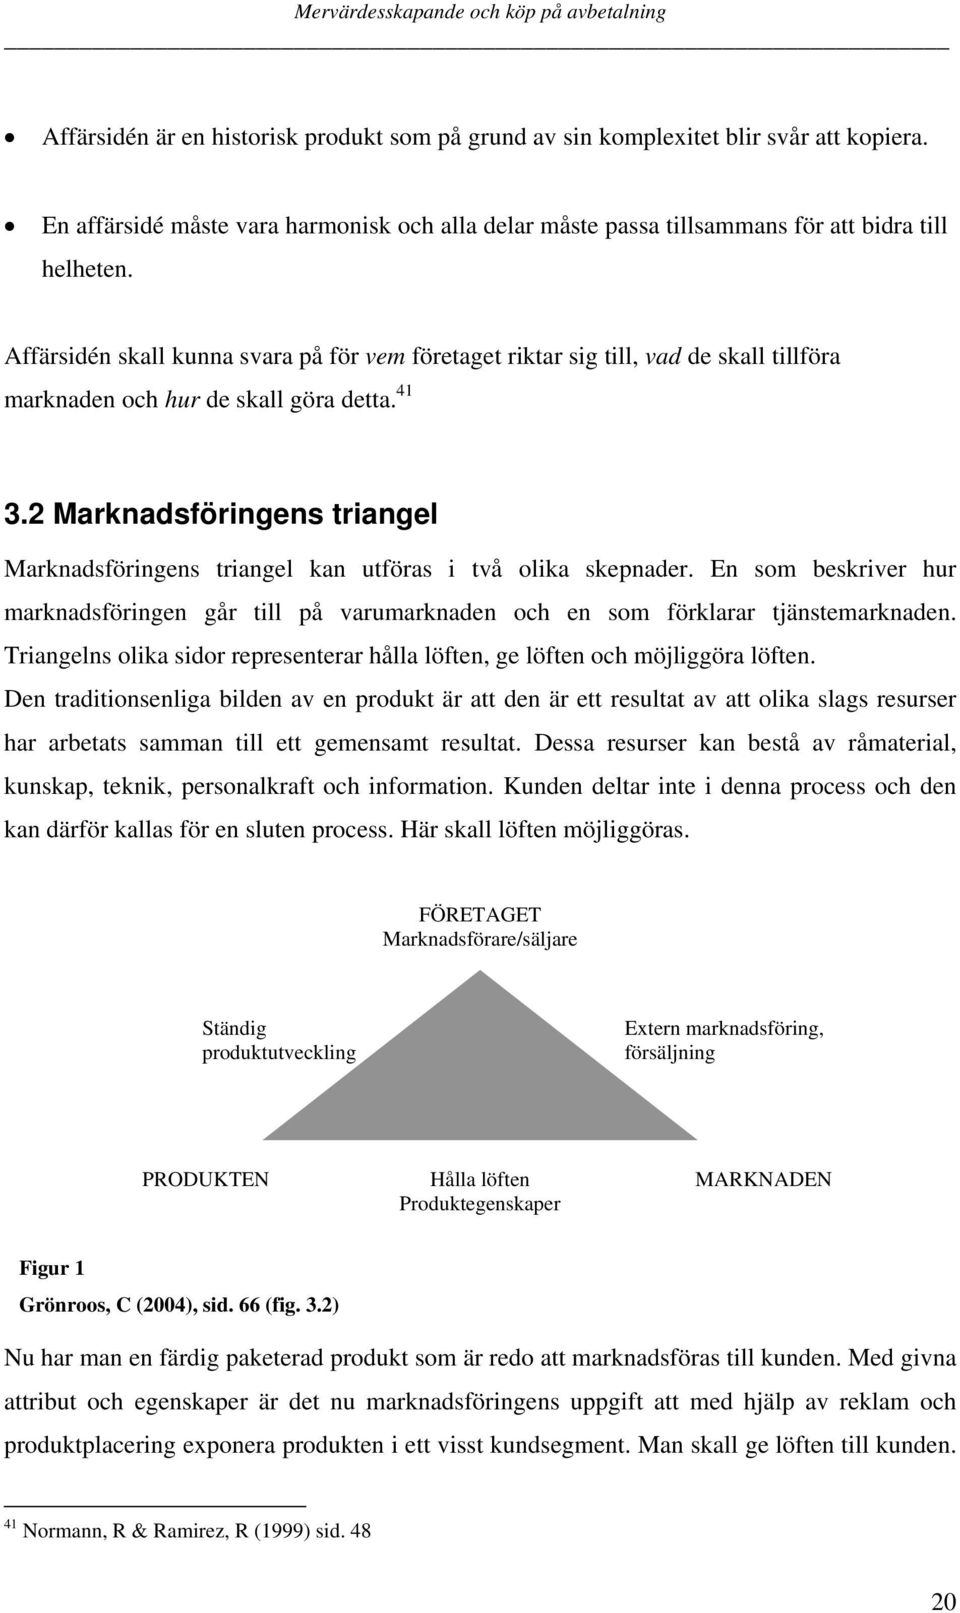 2 Marknadsföringens triangel Marknadsföringens triangel kan utföras i två olika skepnader. En som beskriver hur marknadsföringen går till på varumarknaden och en som förklarar tjänstemarknaden.